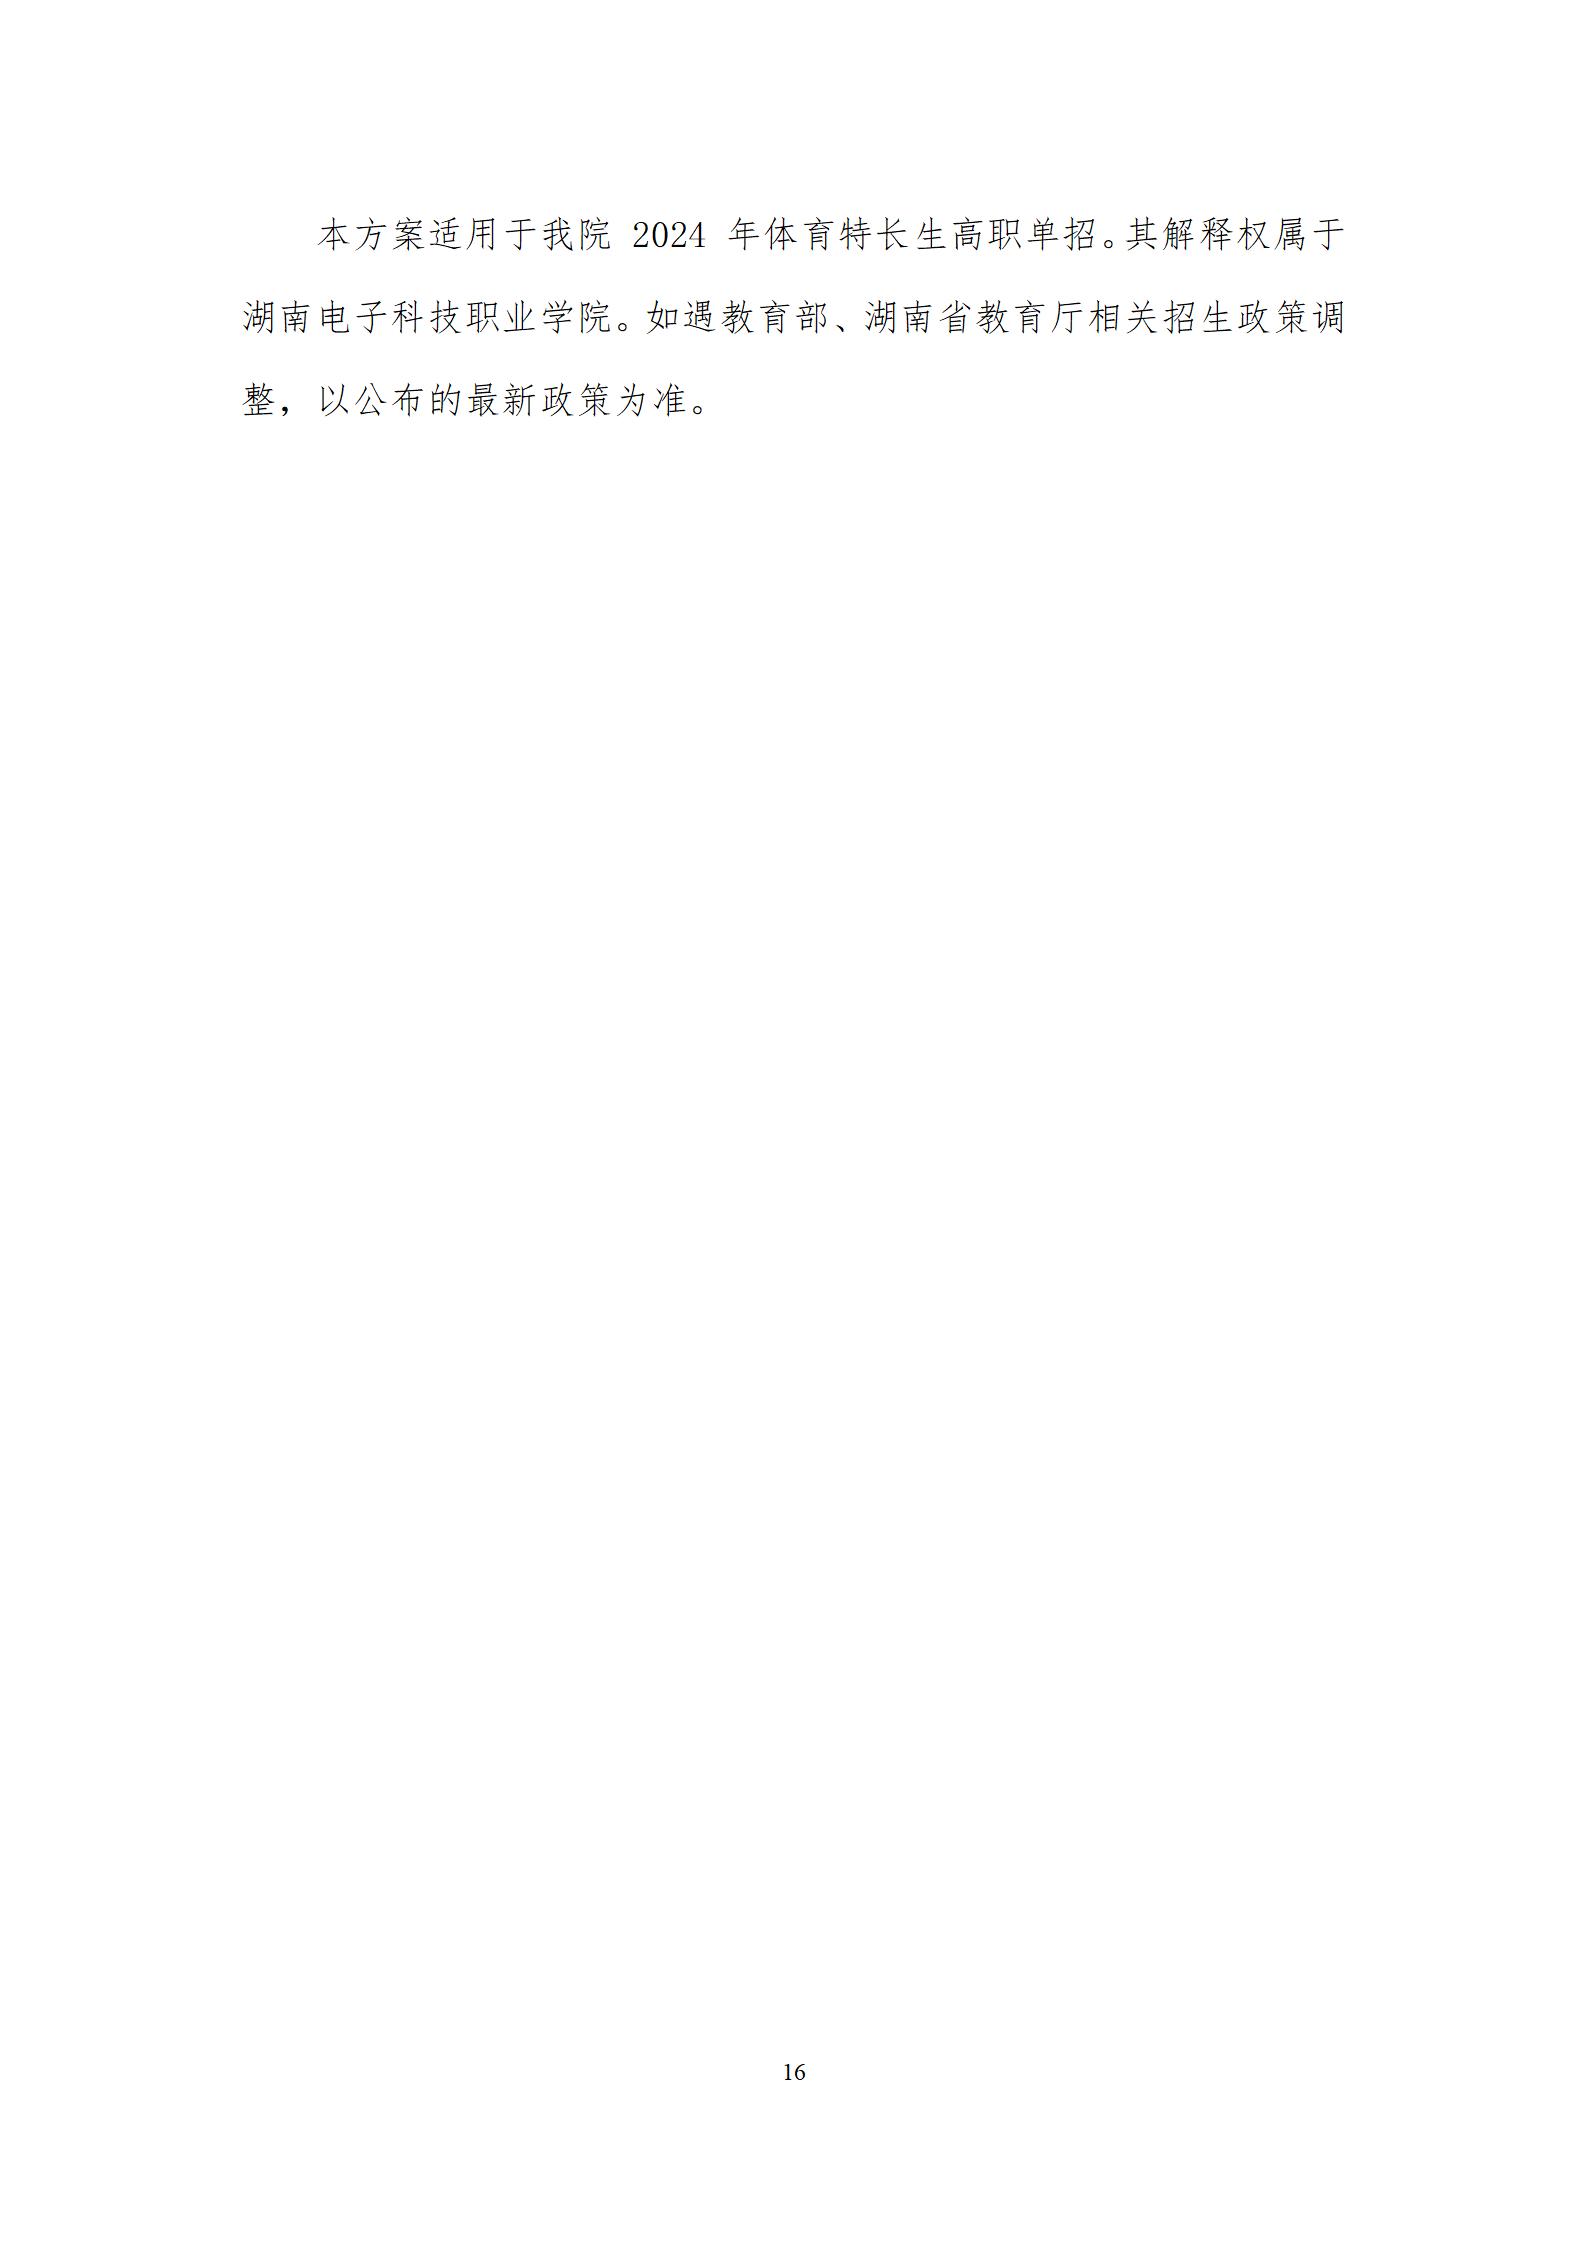 湖南电子科技职业学院章程（教育厅）_16.jpg